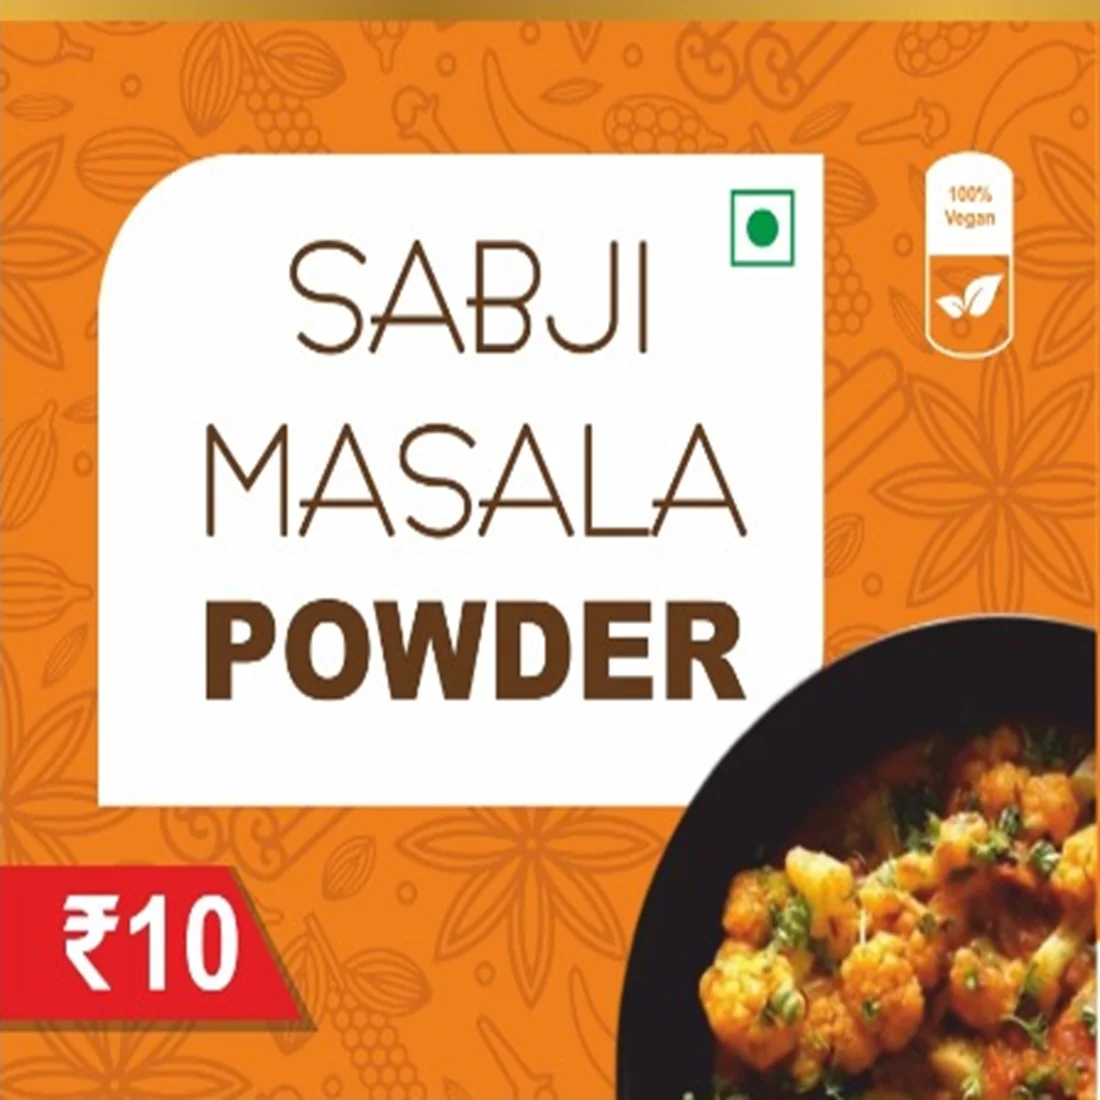 Sabji Masala powder